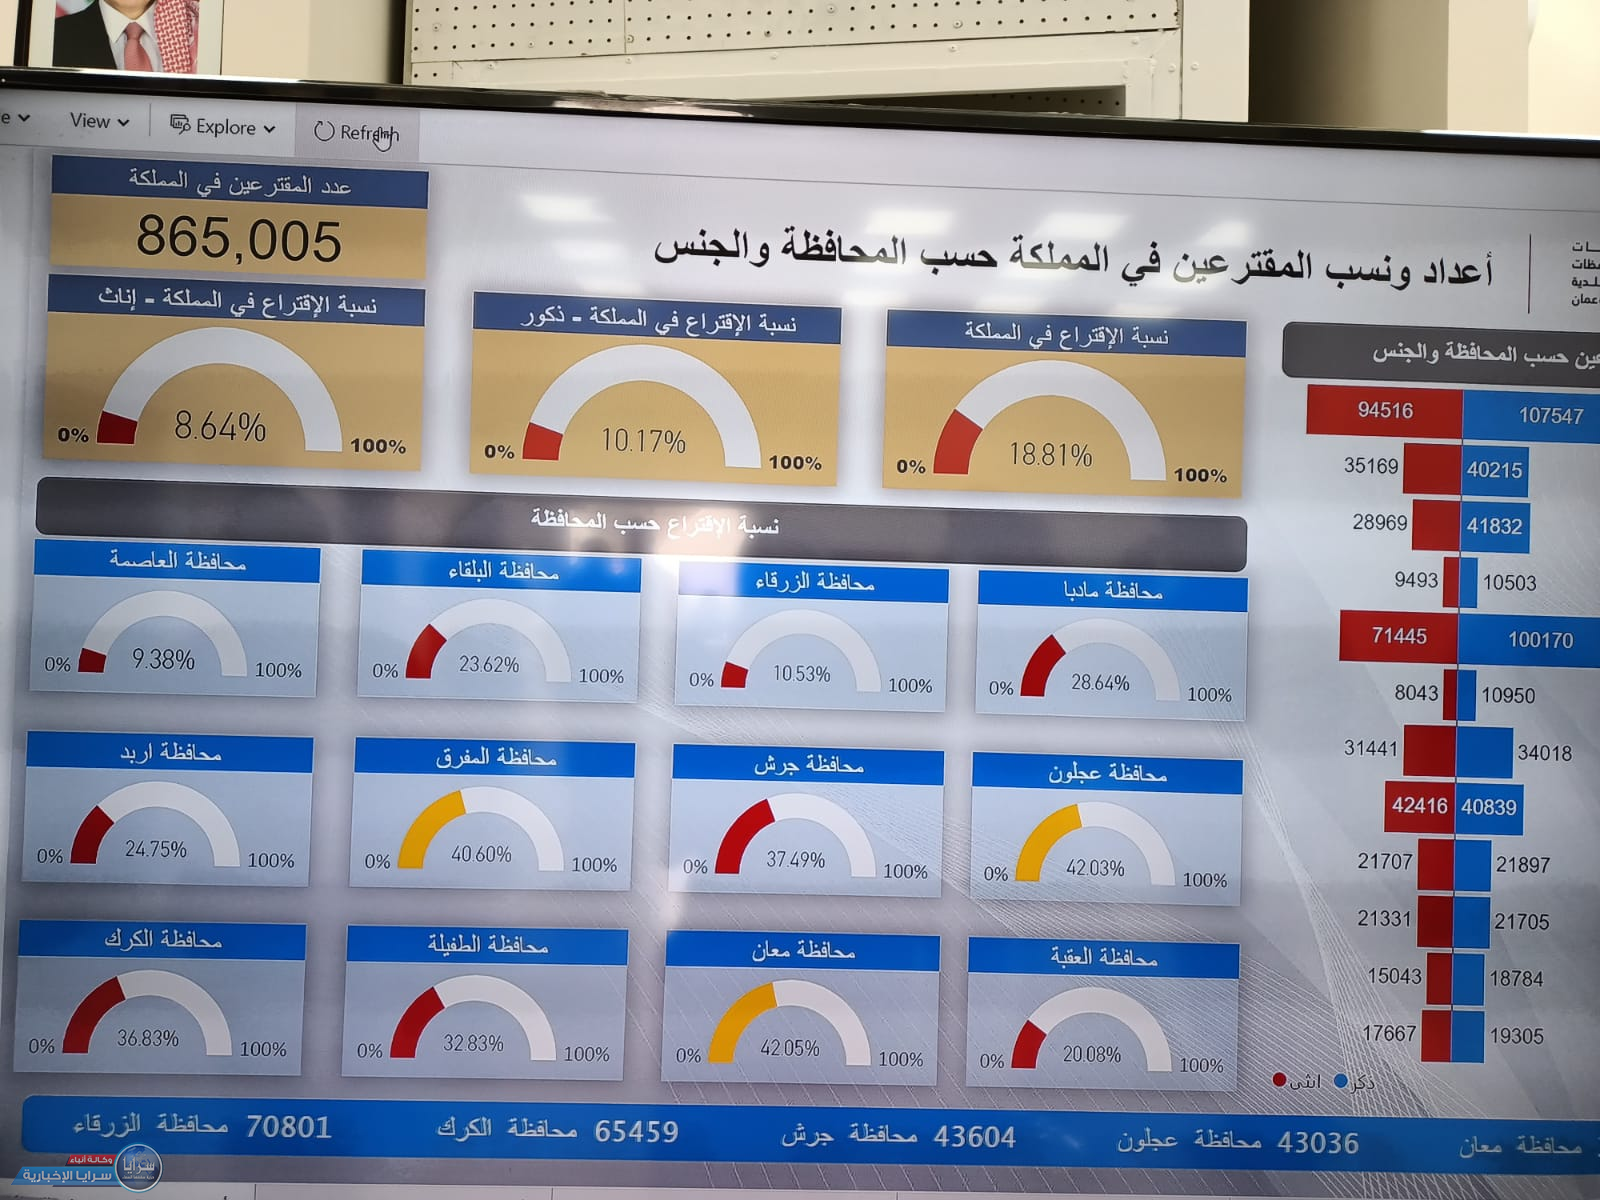 محافظة معان "أعلى نسبة تصويت" في الانتخابات المحلية حتى الثالثة عصرا ونسبة التصويت في المملكة 18.81%